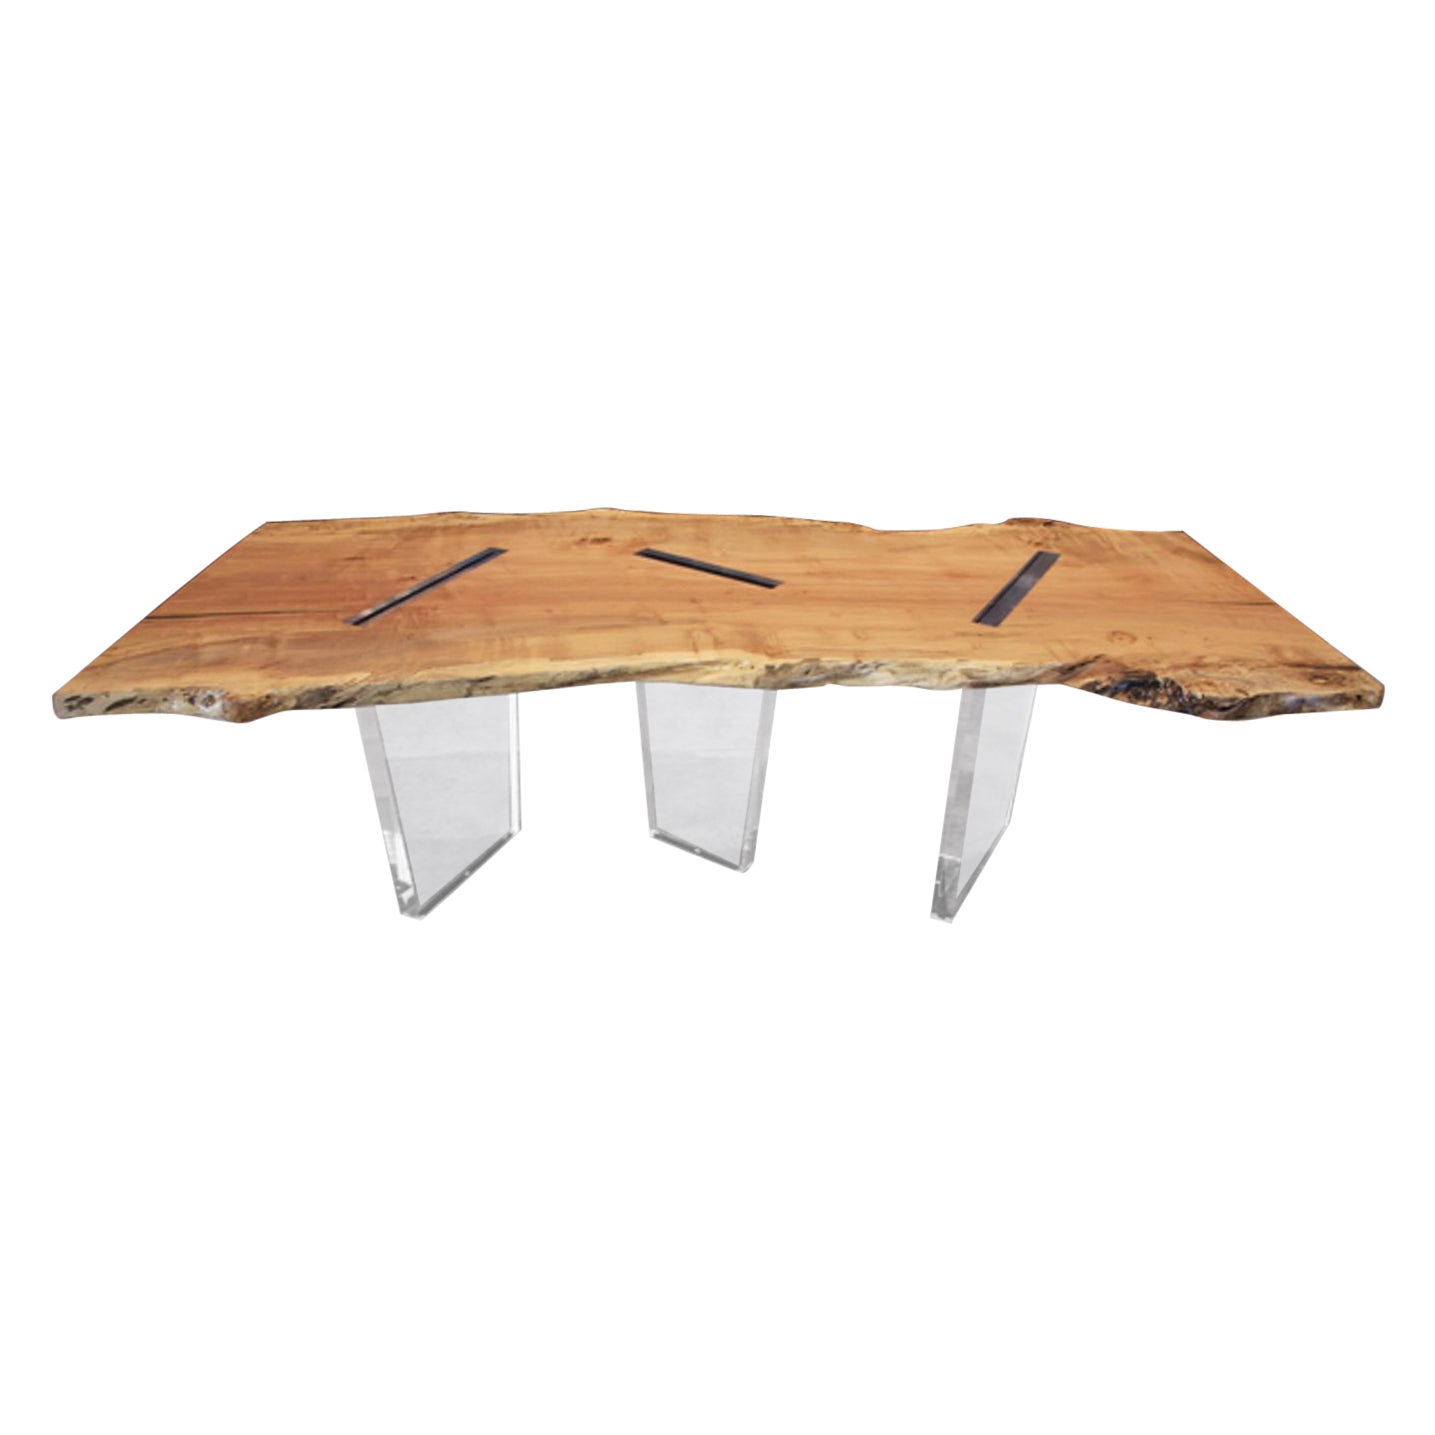 Moderner Esstisch aus Ahornholz mit 3 eingelassenen Acrylbeinen und naturfarbener Kante